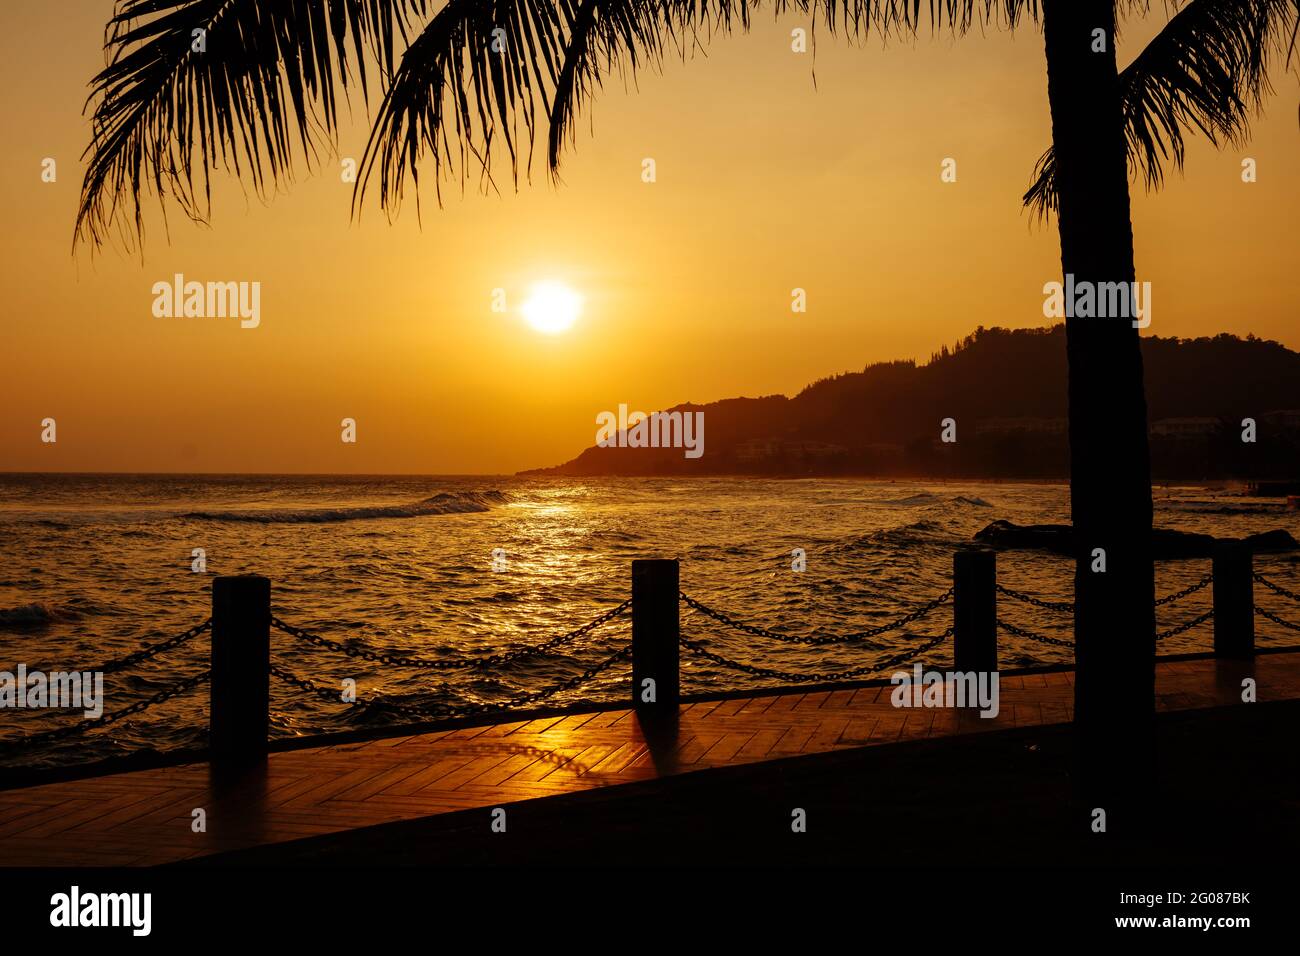 Splendida vista del tramonto sul mare sull'isola asiatica. Foto Stock